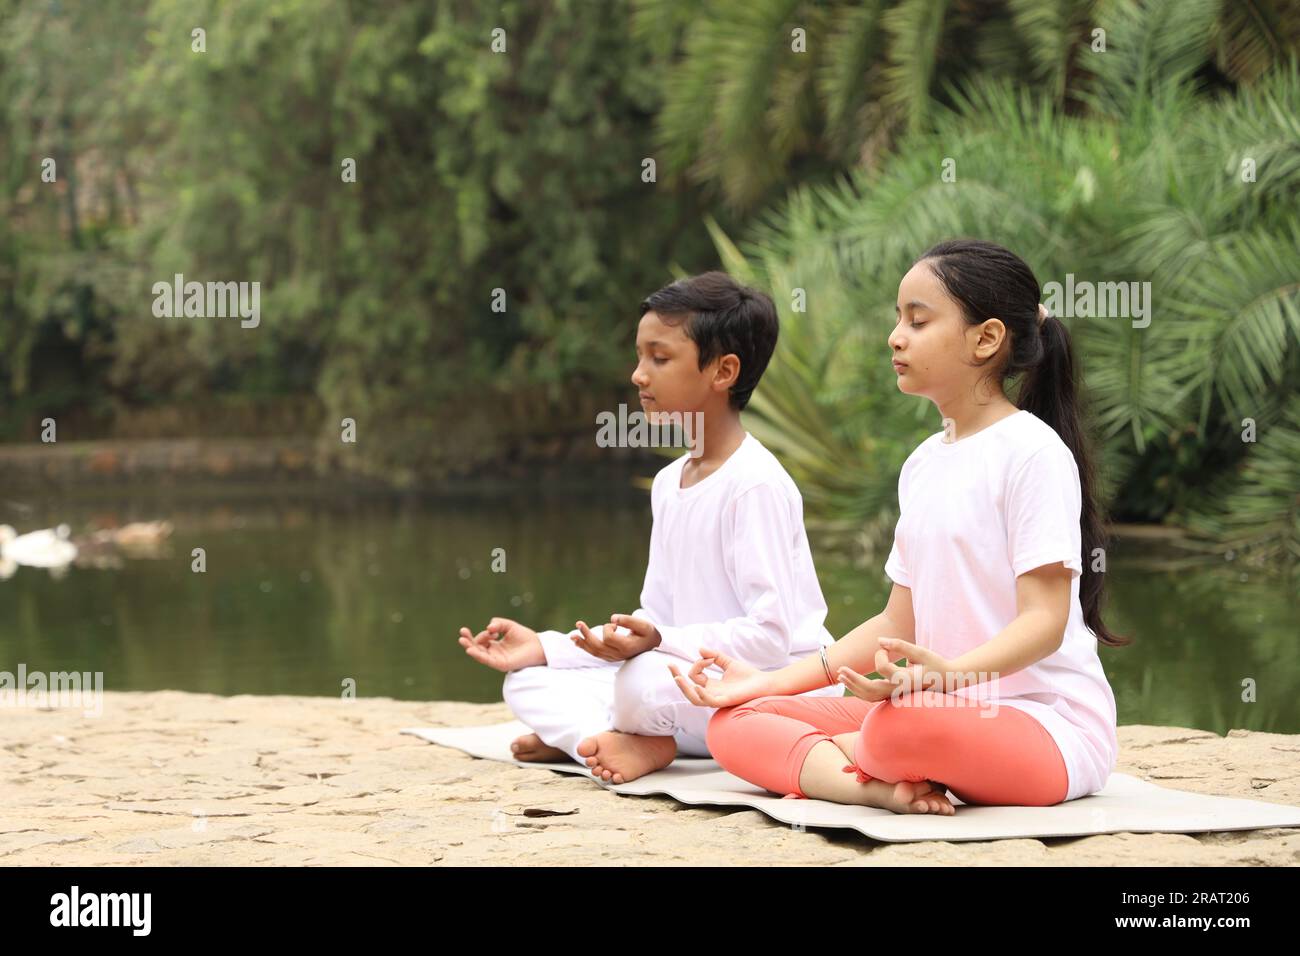 Junge Kinder, die früh am Morgen Yoga-Übungen in einem grünen öffentlichen Park machen. Wir können Wasserkörper sehen. Kinder sind gesundheitsbewusst. Internationaler Yoga-Tag. Stockfoto